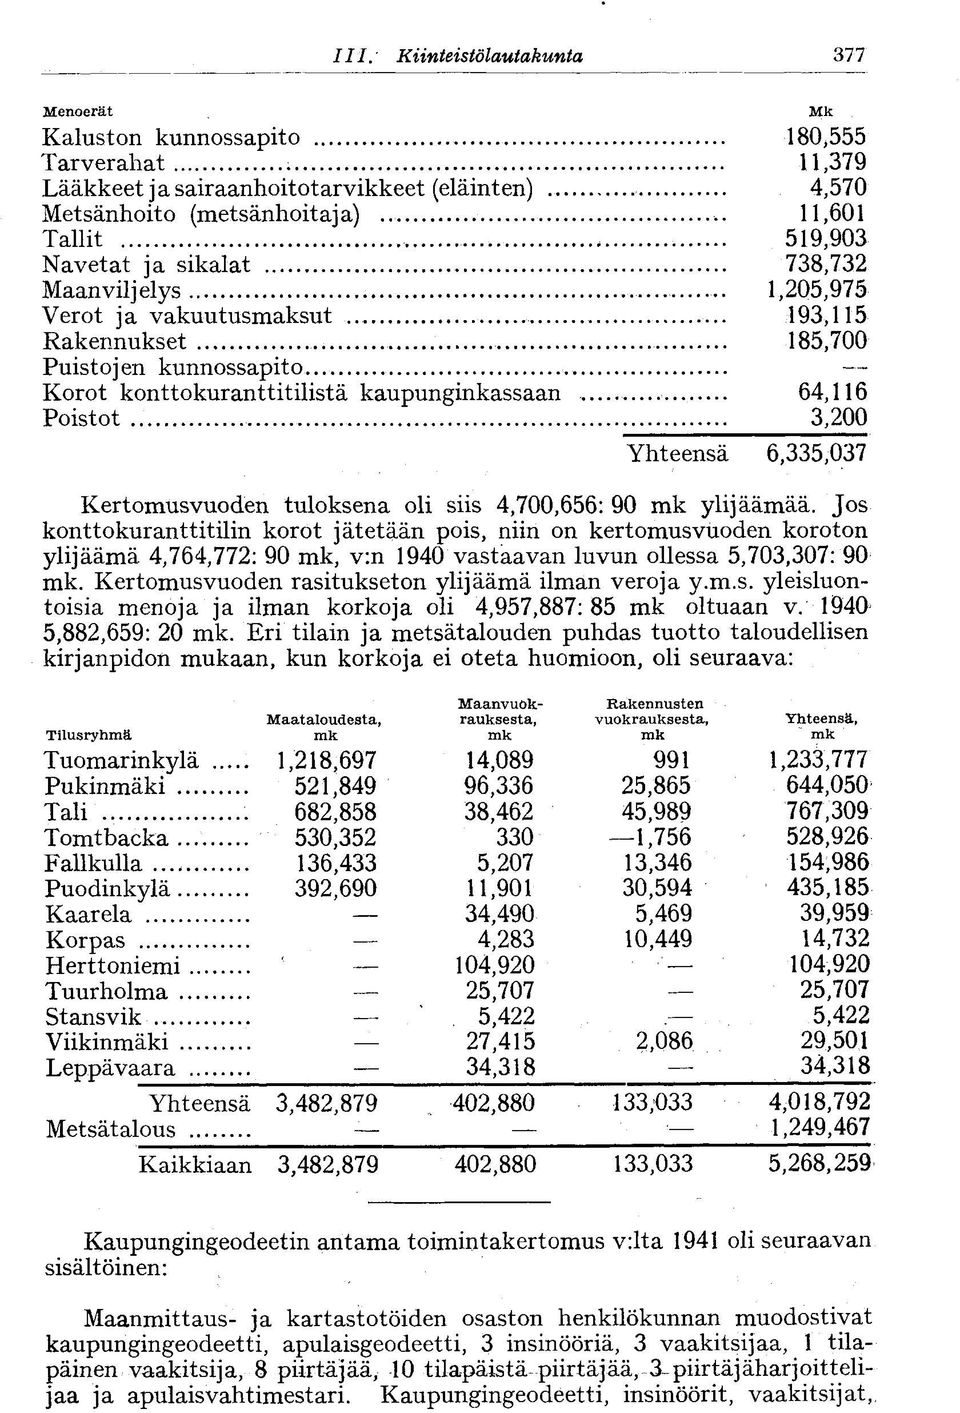 Korot konttokuranttitilistä kaupunginkassaan 64,116 Poistot 3,200 Yhteensä 6,335,037 Kertomusvuoden tuloksena oli siis 4,700,656: 90 mk ylijäämää.